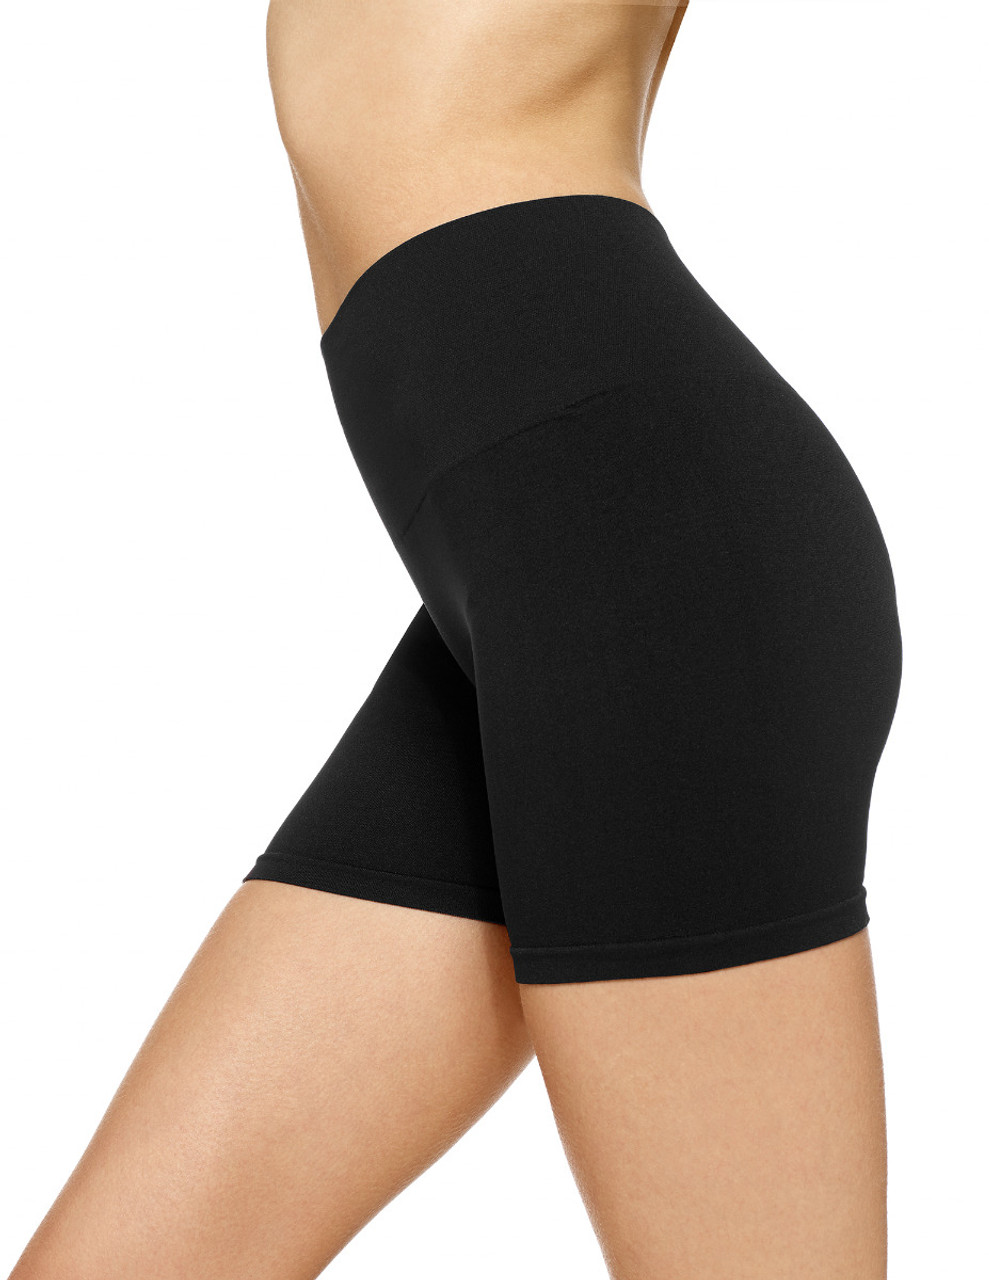 Slip Shorts for Women Seamless Short Leggings High Waist Boyshort